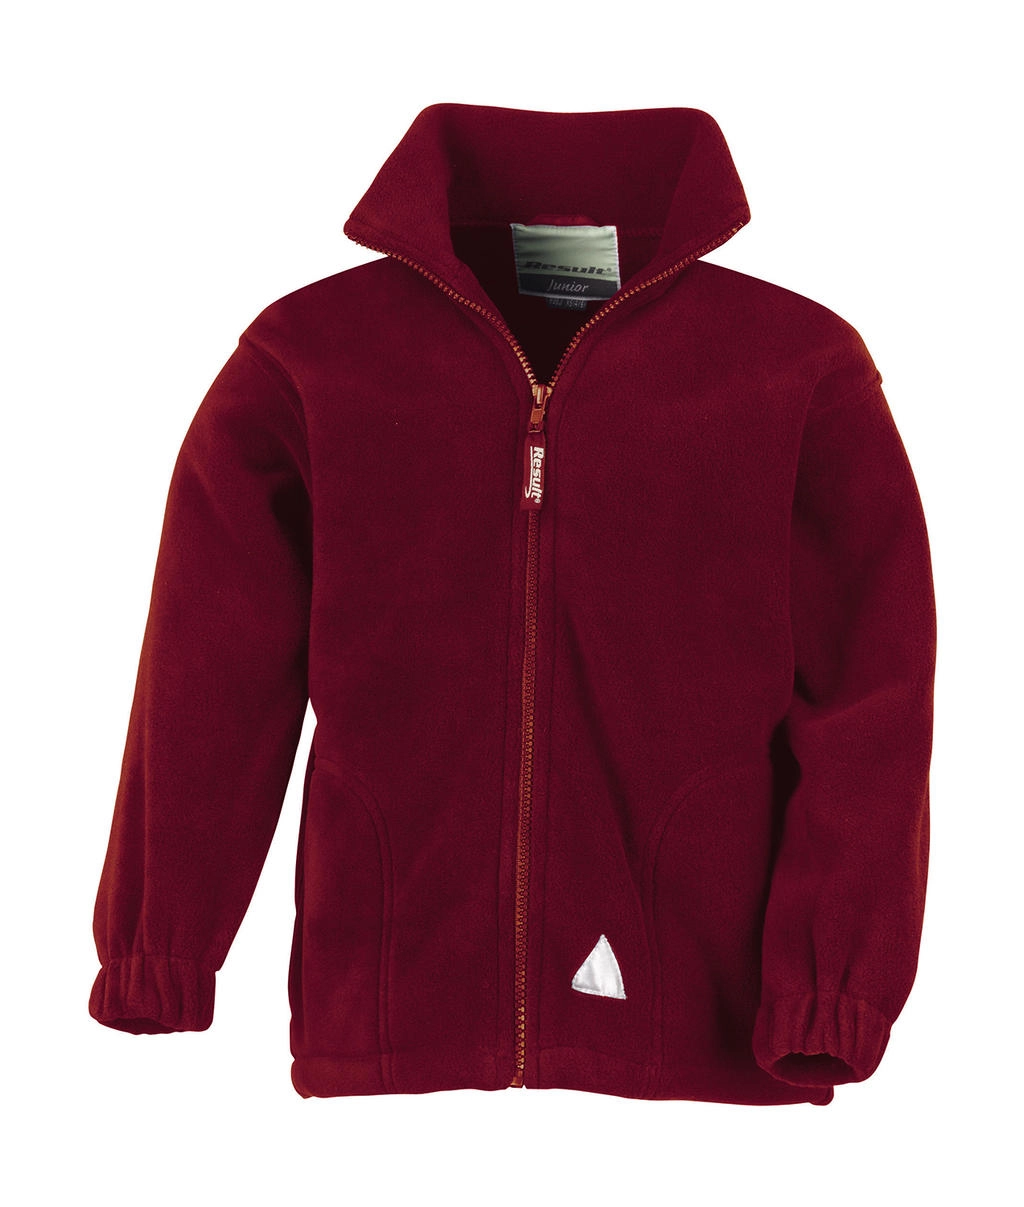 Kids` Fleece Jacket zum Besticken und Bedrucken in der Farbe Burgundy mit Ihren Logo, Schriftzug oder Motiv.